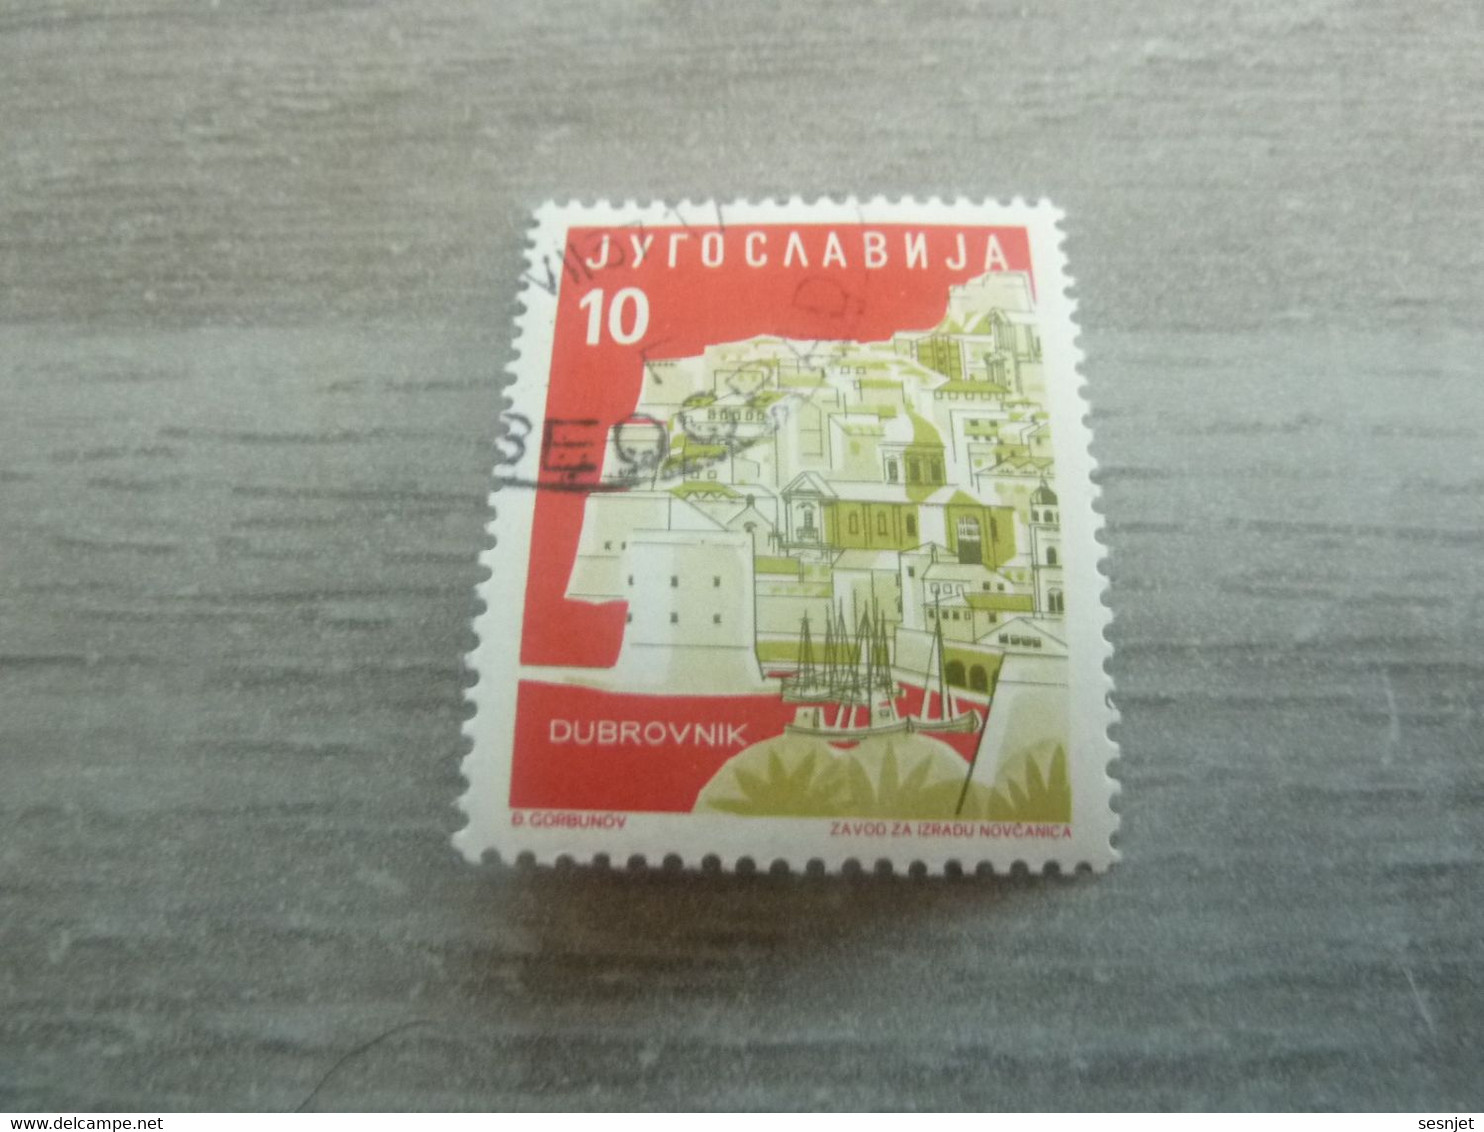 Jyrocaabnja - Dubrovnik - Val 10 - Multicolore - Oblitéré - - Oblitérés